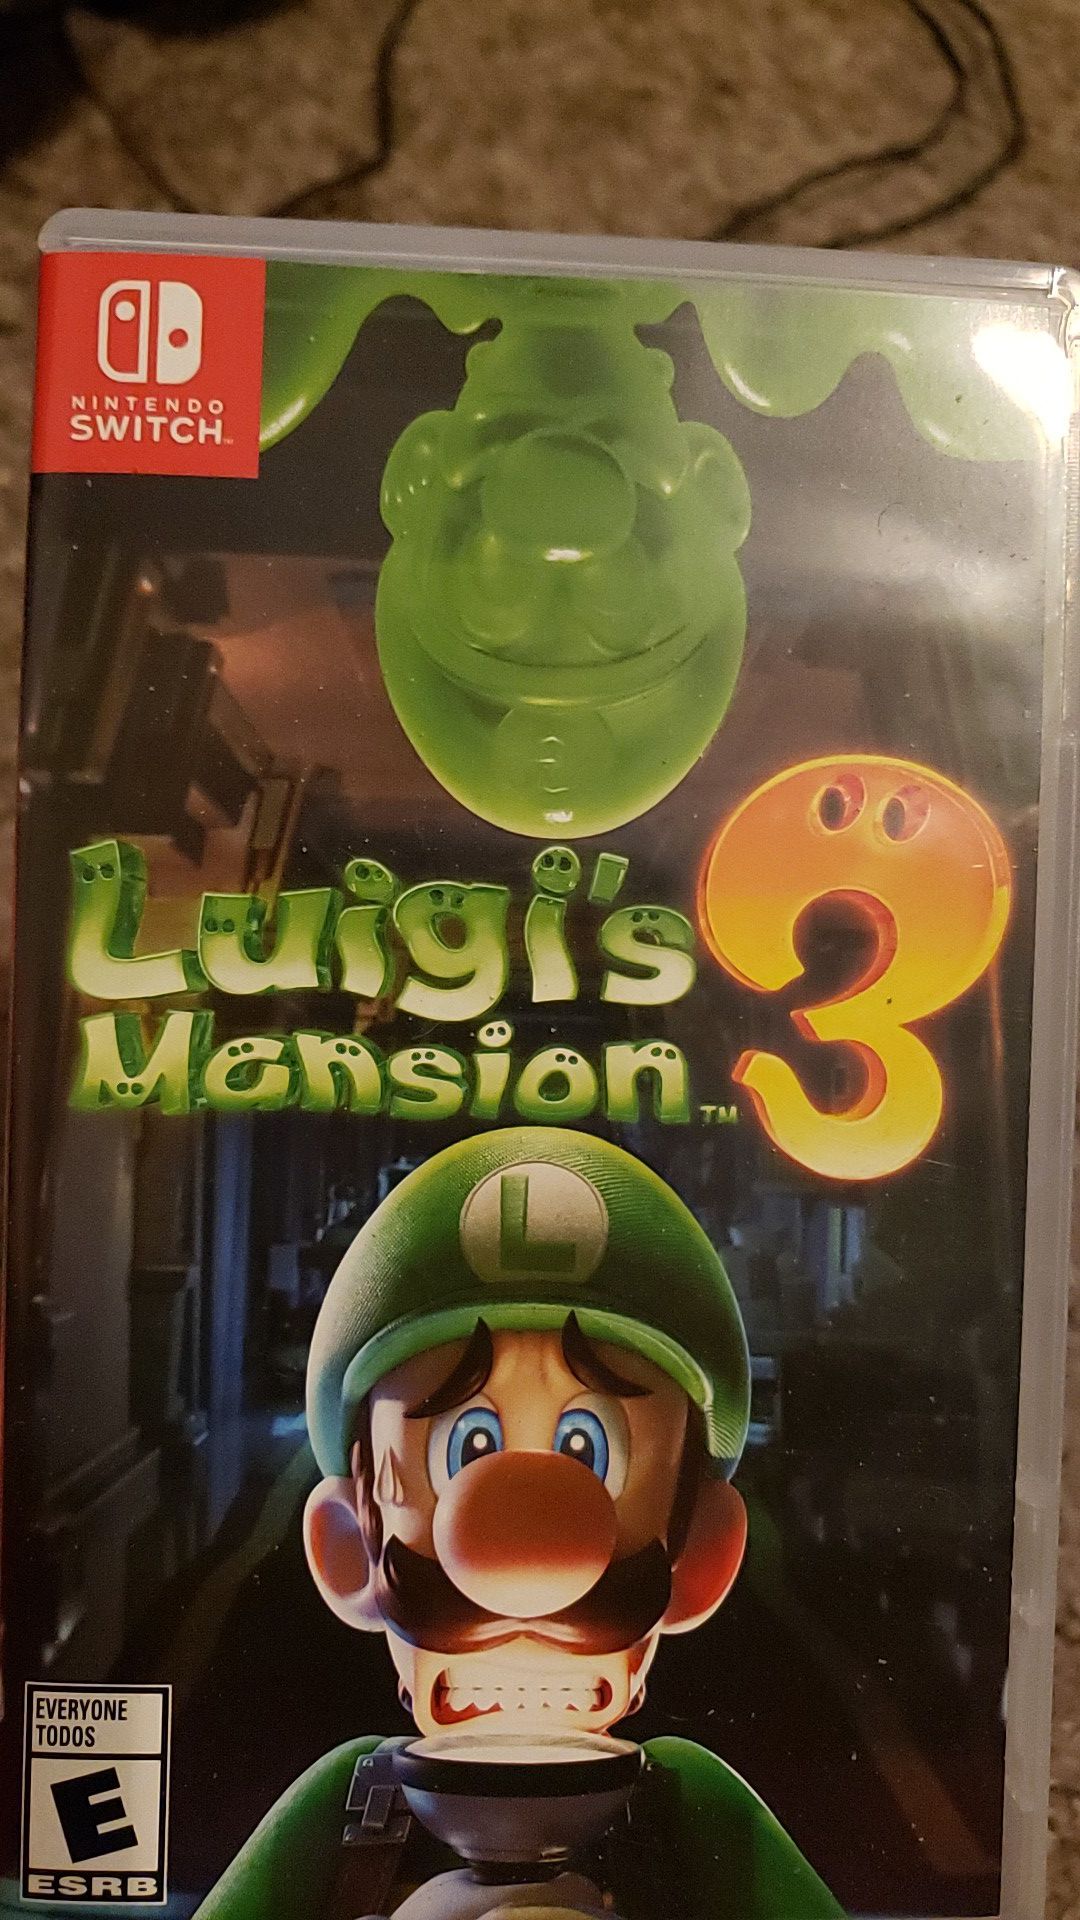 Luigis mansion 3